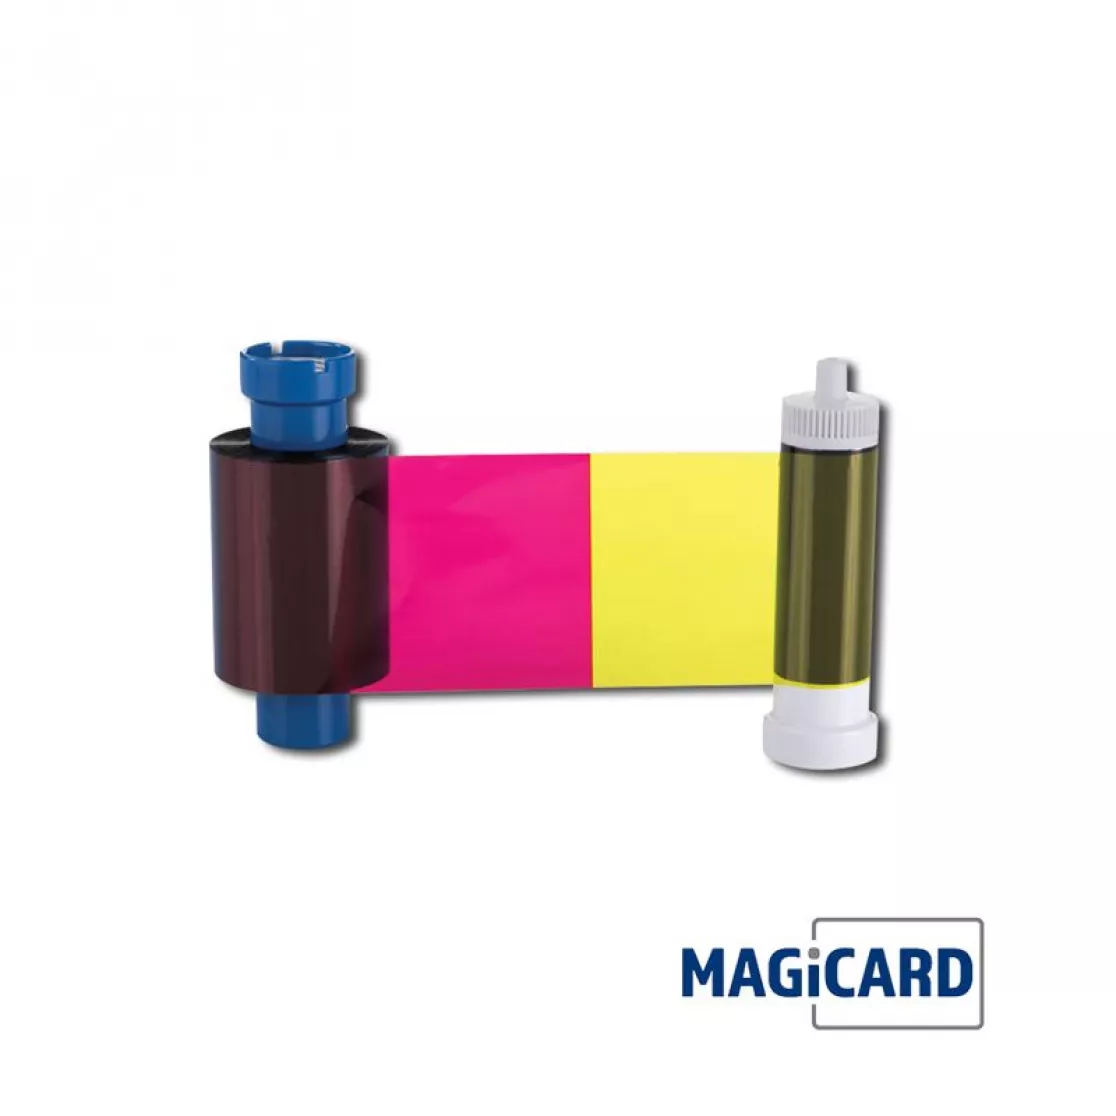 Farbband bunt für Kartendrucker Magicard 600